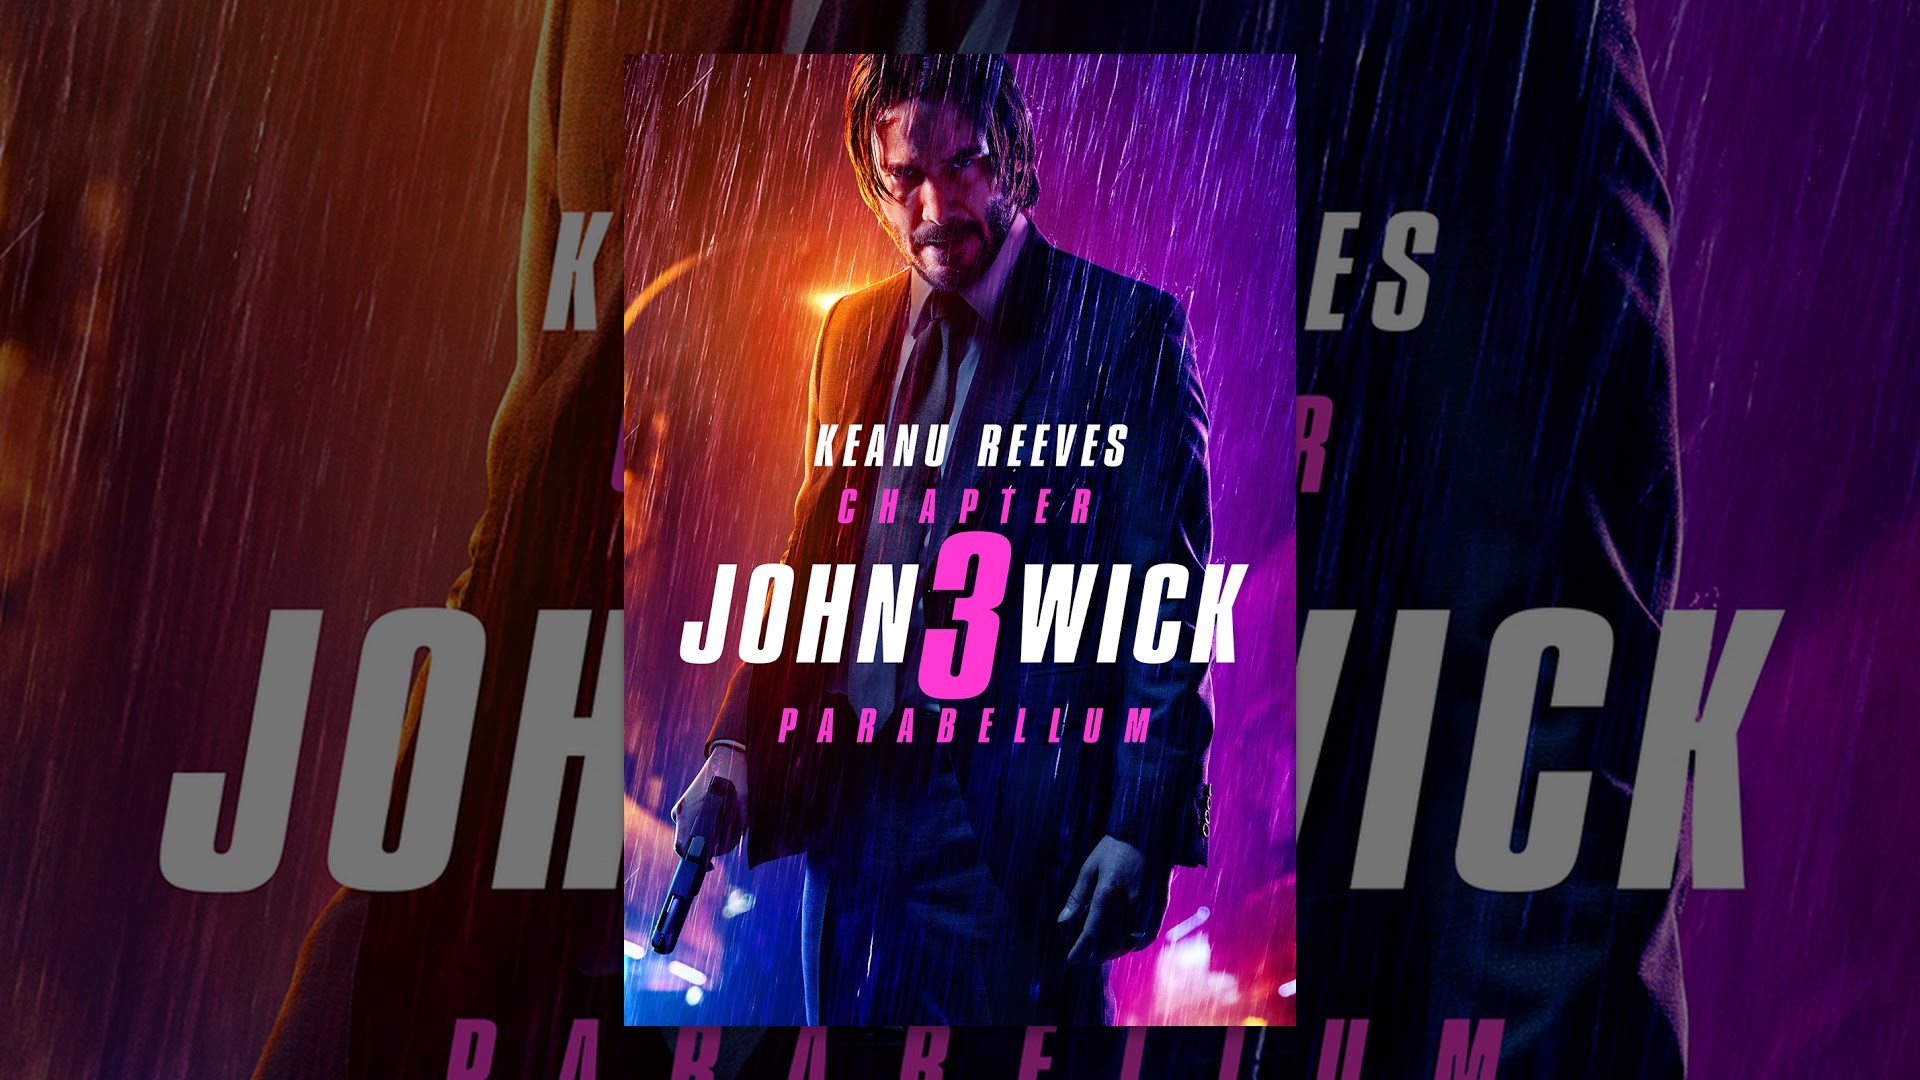 Watch John Wick: Chapter 3 - Parabellum